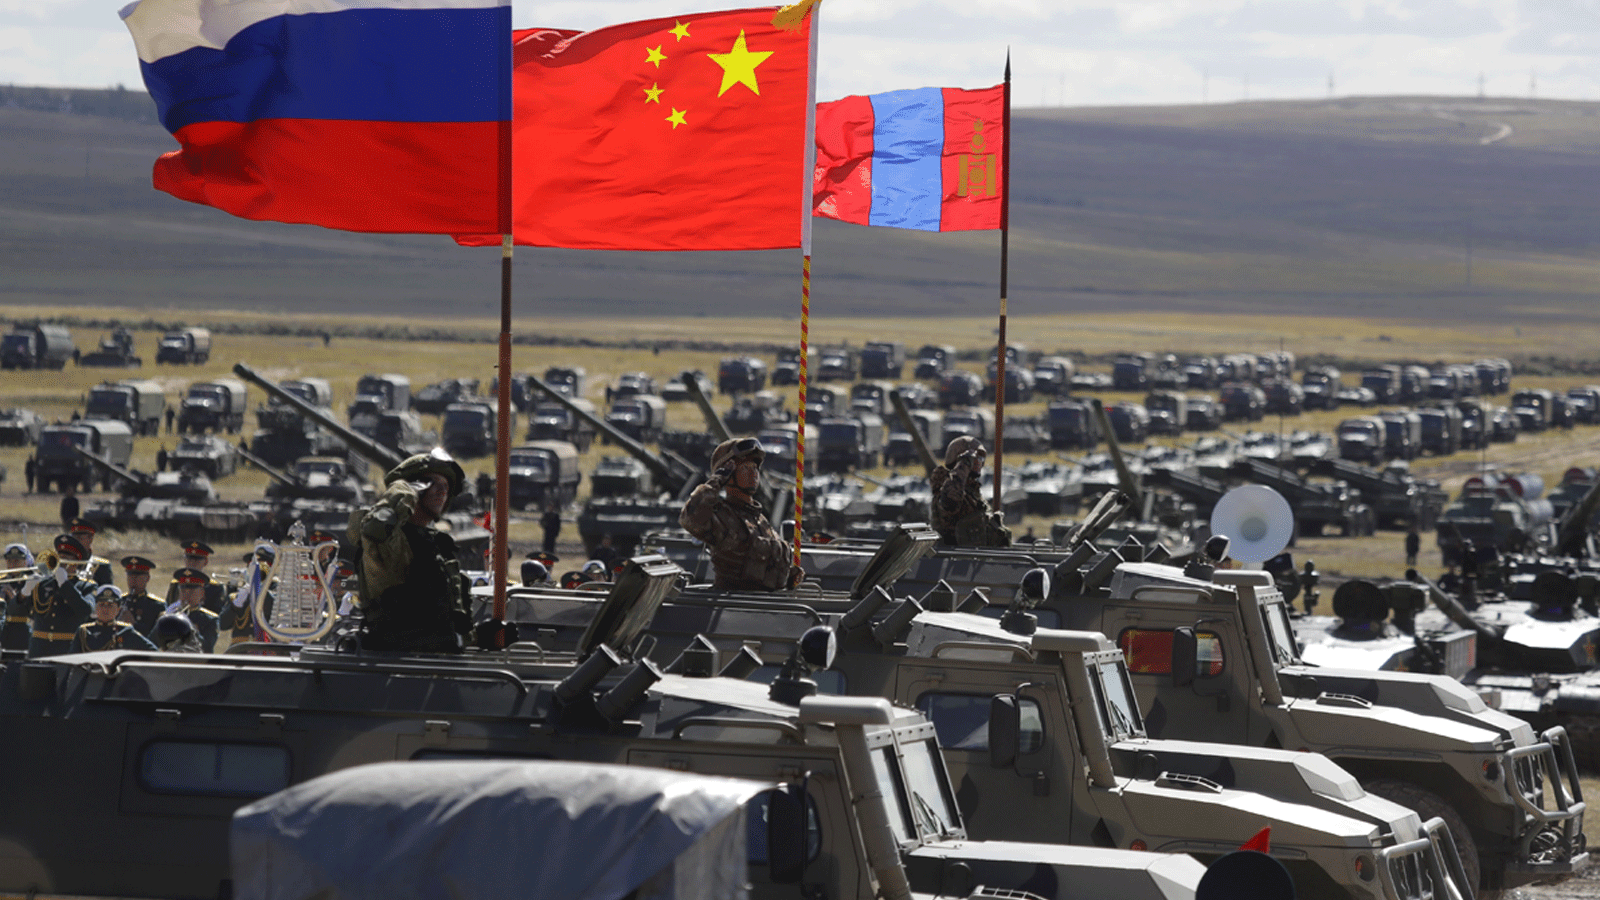 مشهد من مناورات فوستوك -2018 التي نفذتها القوات العسكرية لروسيا والصين على مدى أسبوعين في مساحات شاسعة من سيبيريا وآسيا والمحيط الهادئ والقطب الشمالي والمحيط الهادي. 